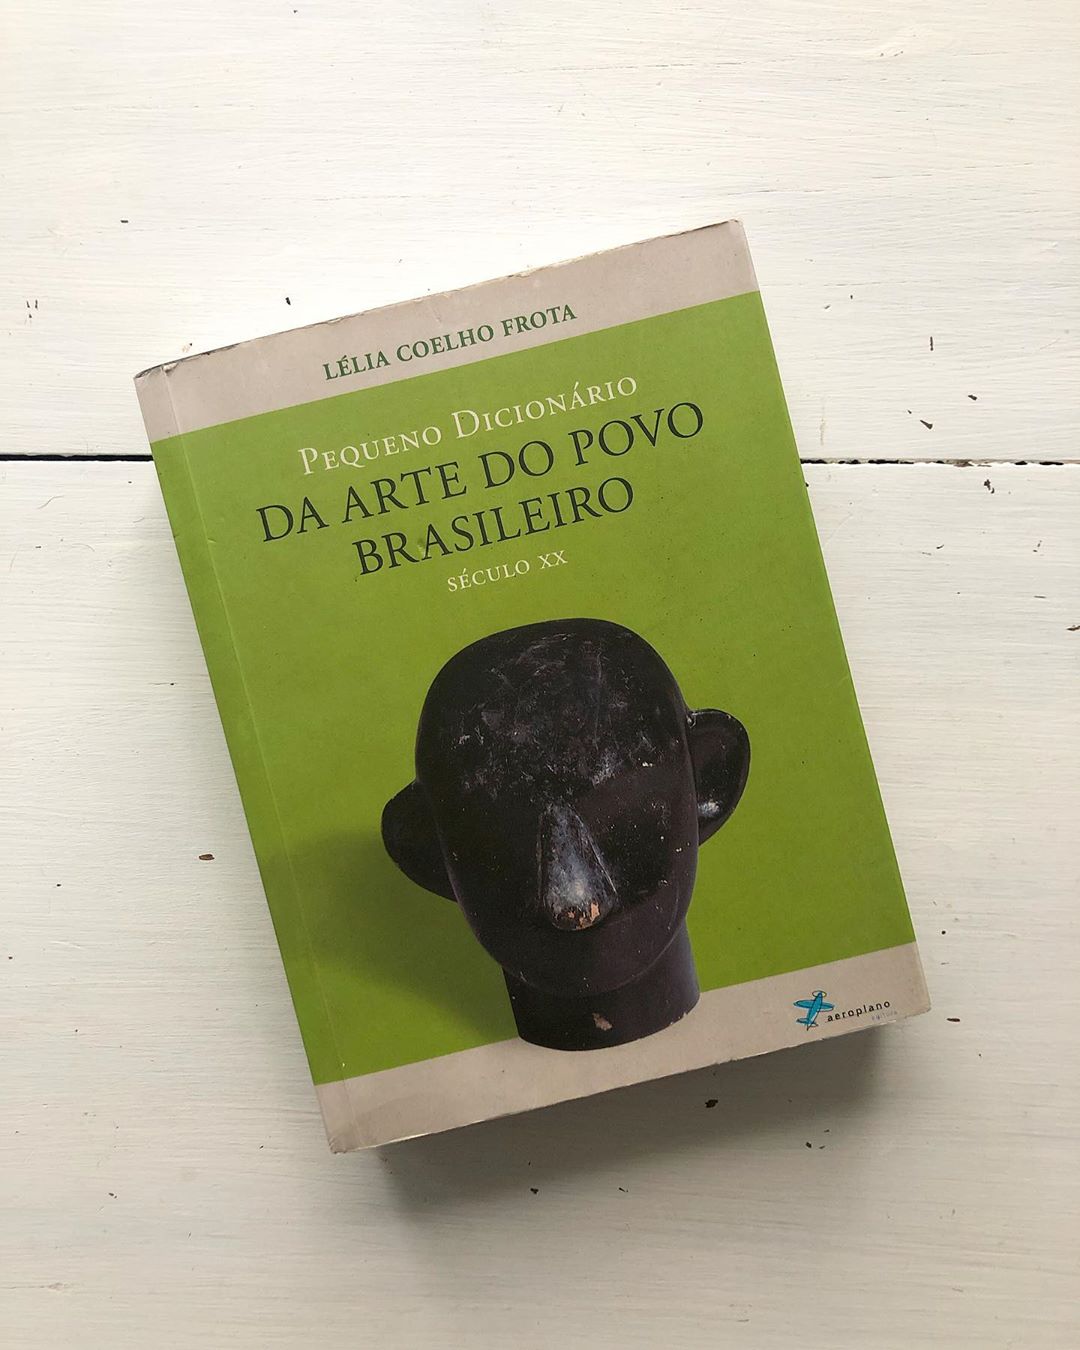 O livro "Pequeno dicionário de arte do povo brasileiro", de Lélia Coelho Frota, foi um dos primeiros a reconhecer artesãos brasileiros (Foto: Arquivo pessoal)